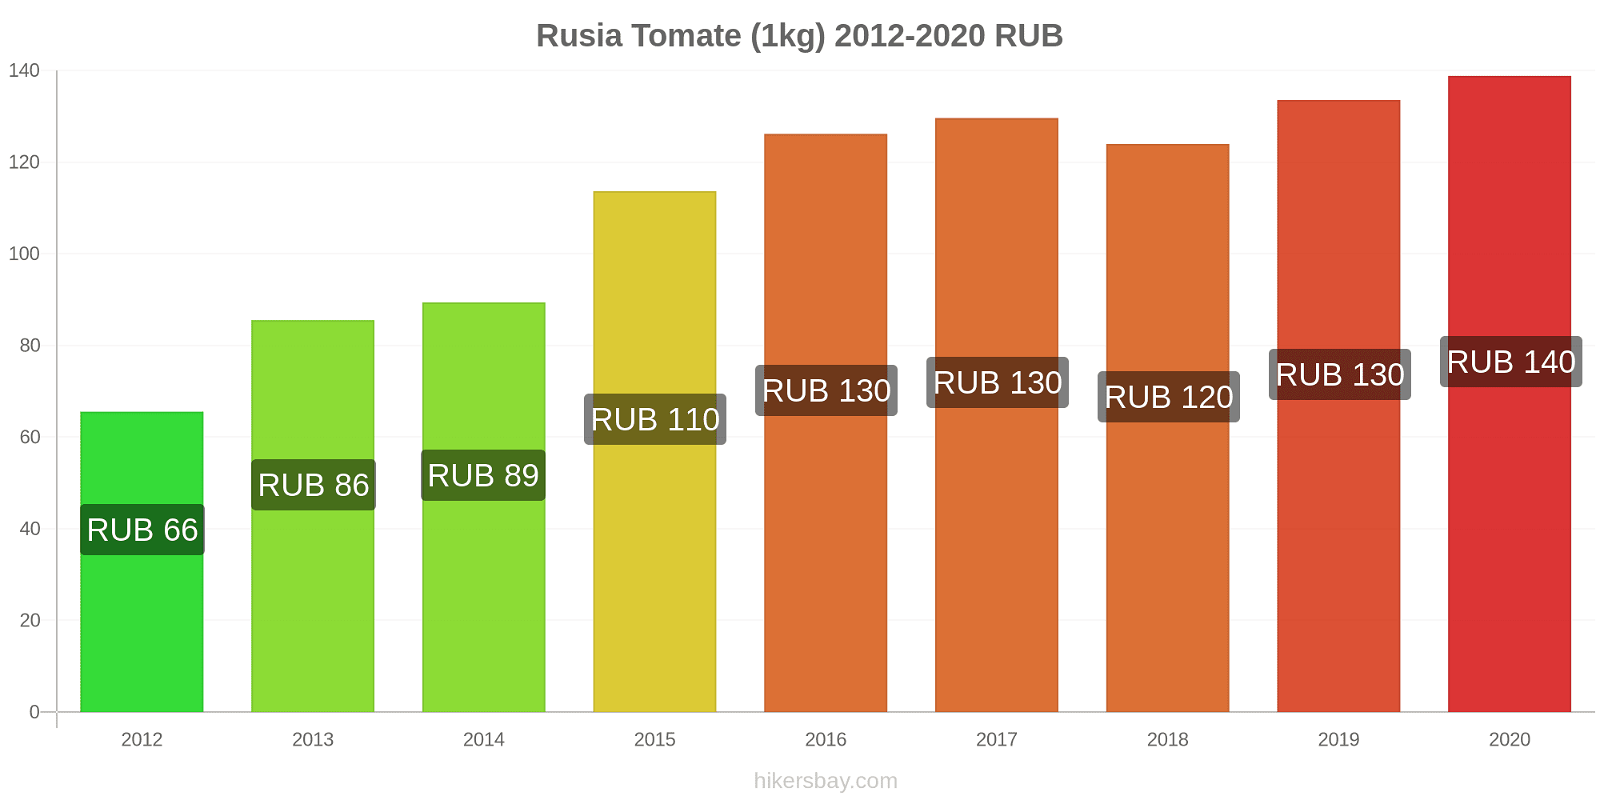 Rusia cambios de precios Tomate (1kg) hikersbay.com